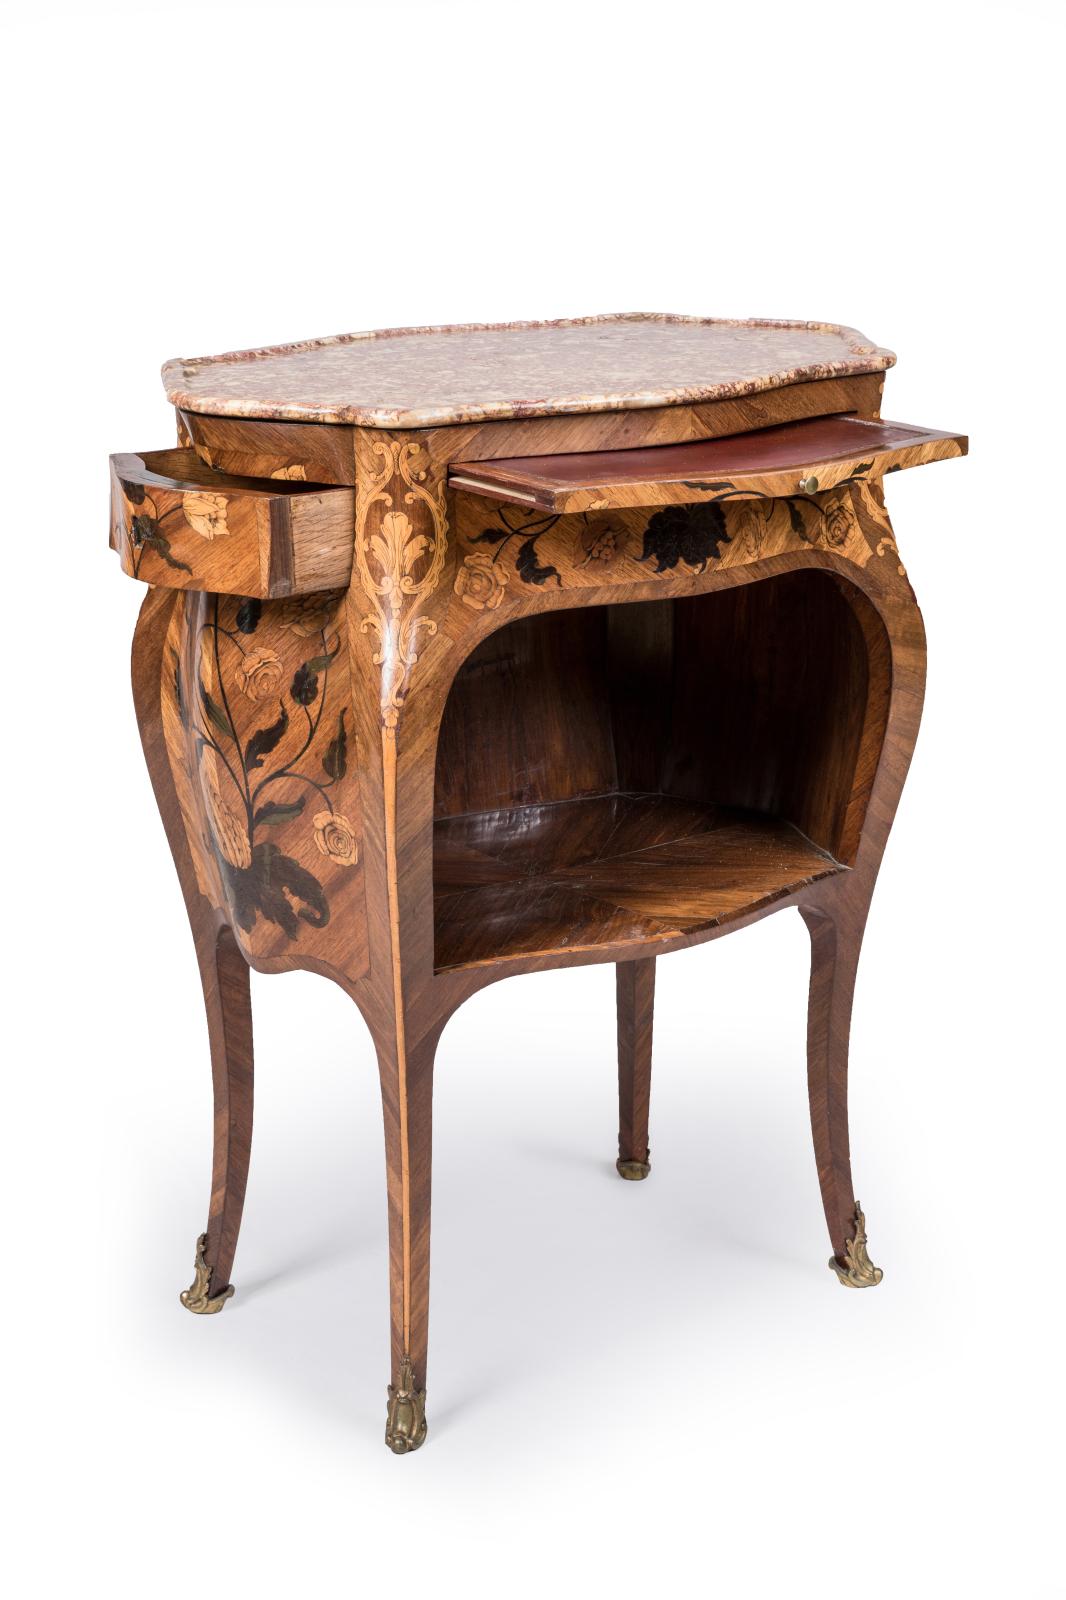 La table dite «à en-cas» complétait volontiers l’ameublement des salons et chambres à coucher sous le règne de Louis XV. Datant de cette époque, en vo